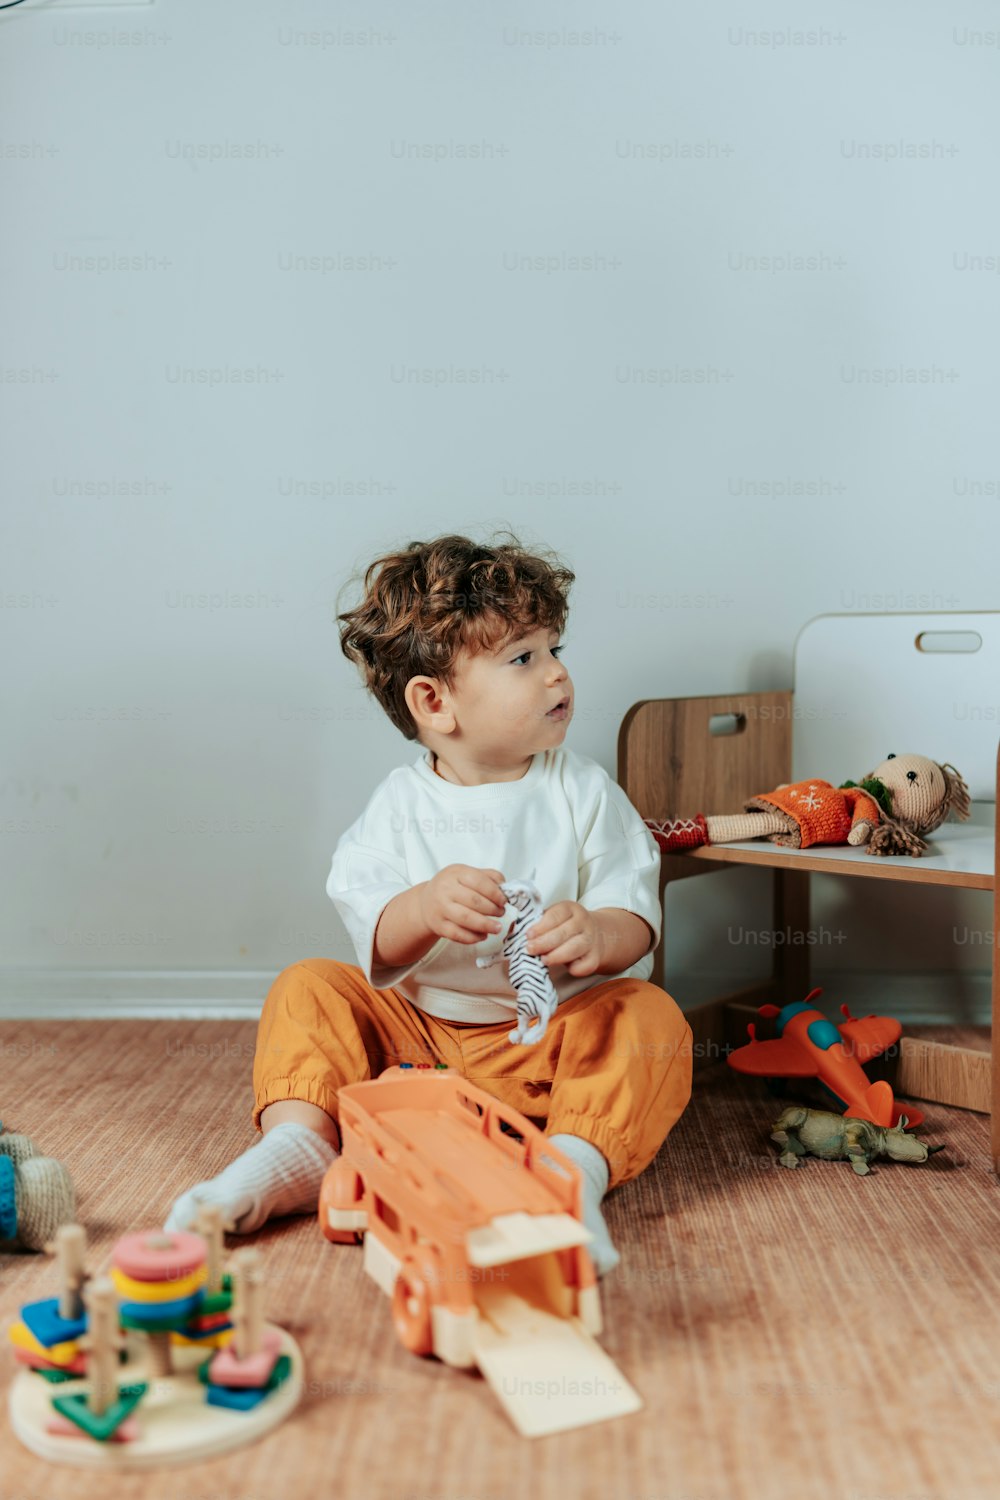 Ein kleiner Junge sitzt auf dem Boden und spielt mit Spielzeug